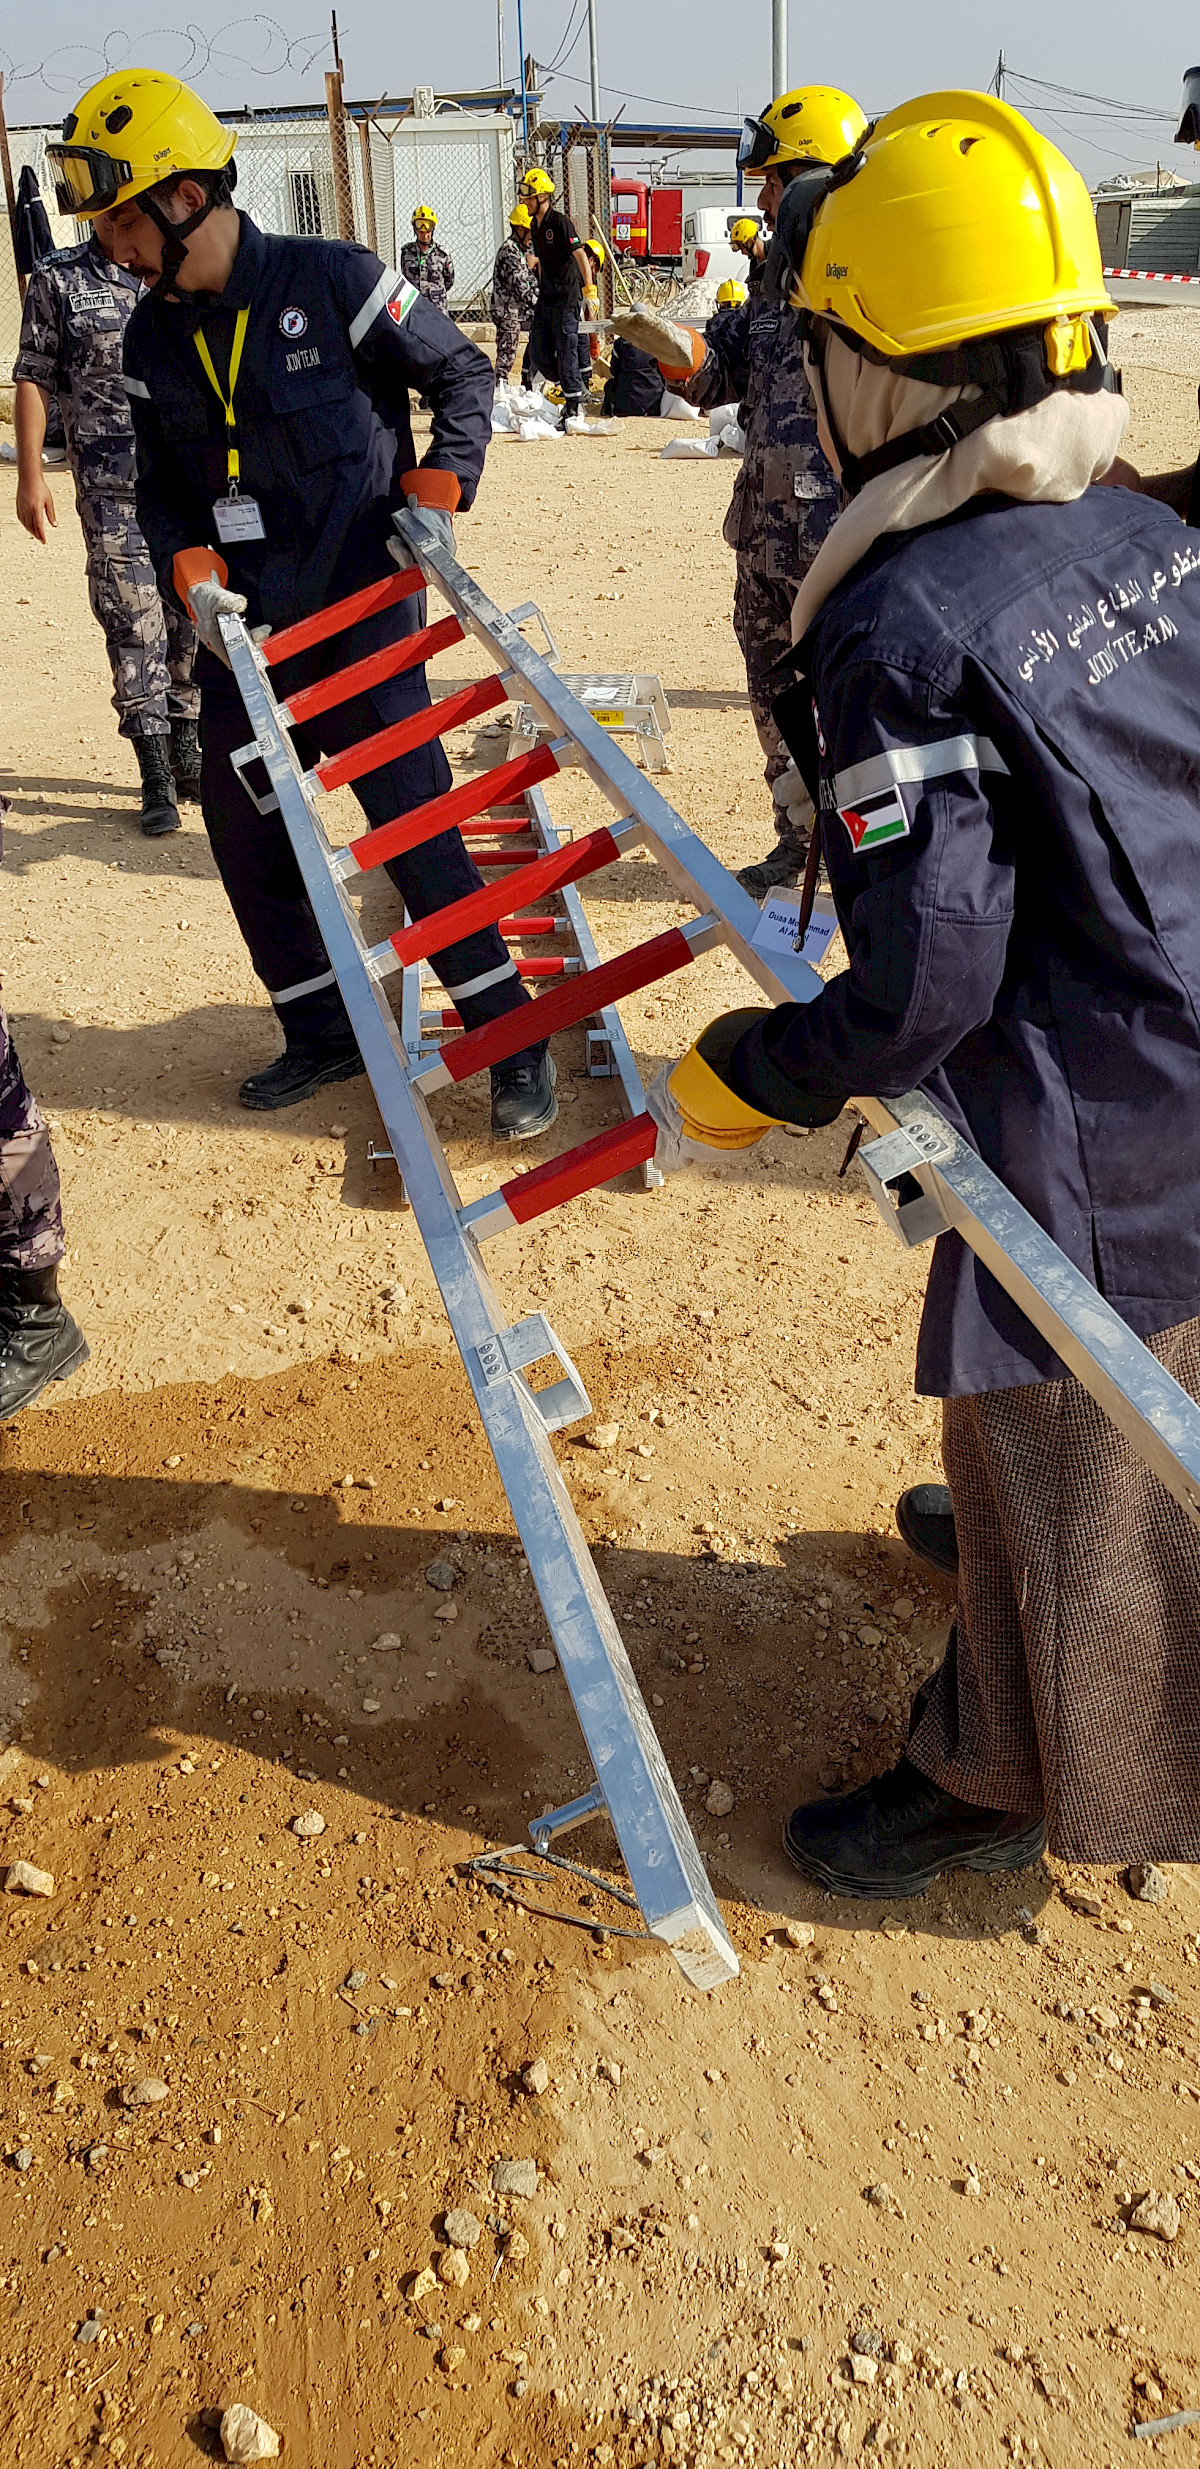 Pumpausbildung in der Wüste – THW-Helfer Michael Nätscher im Auslandseinsatz in Jordanien